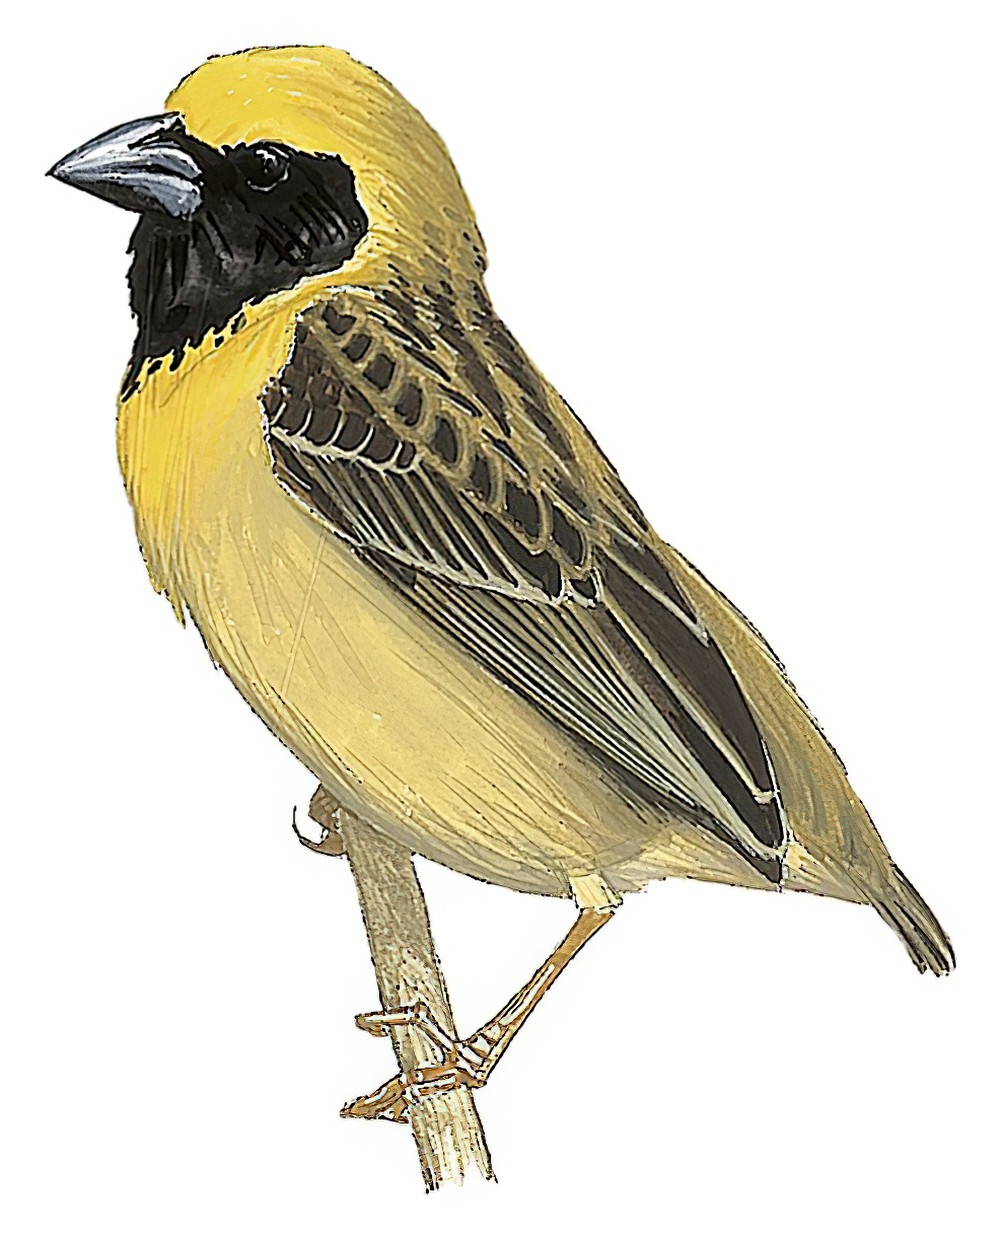 Bob-tailed Weaver / Brachycope anomala